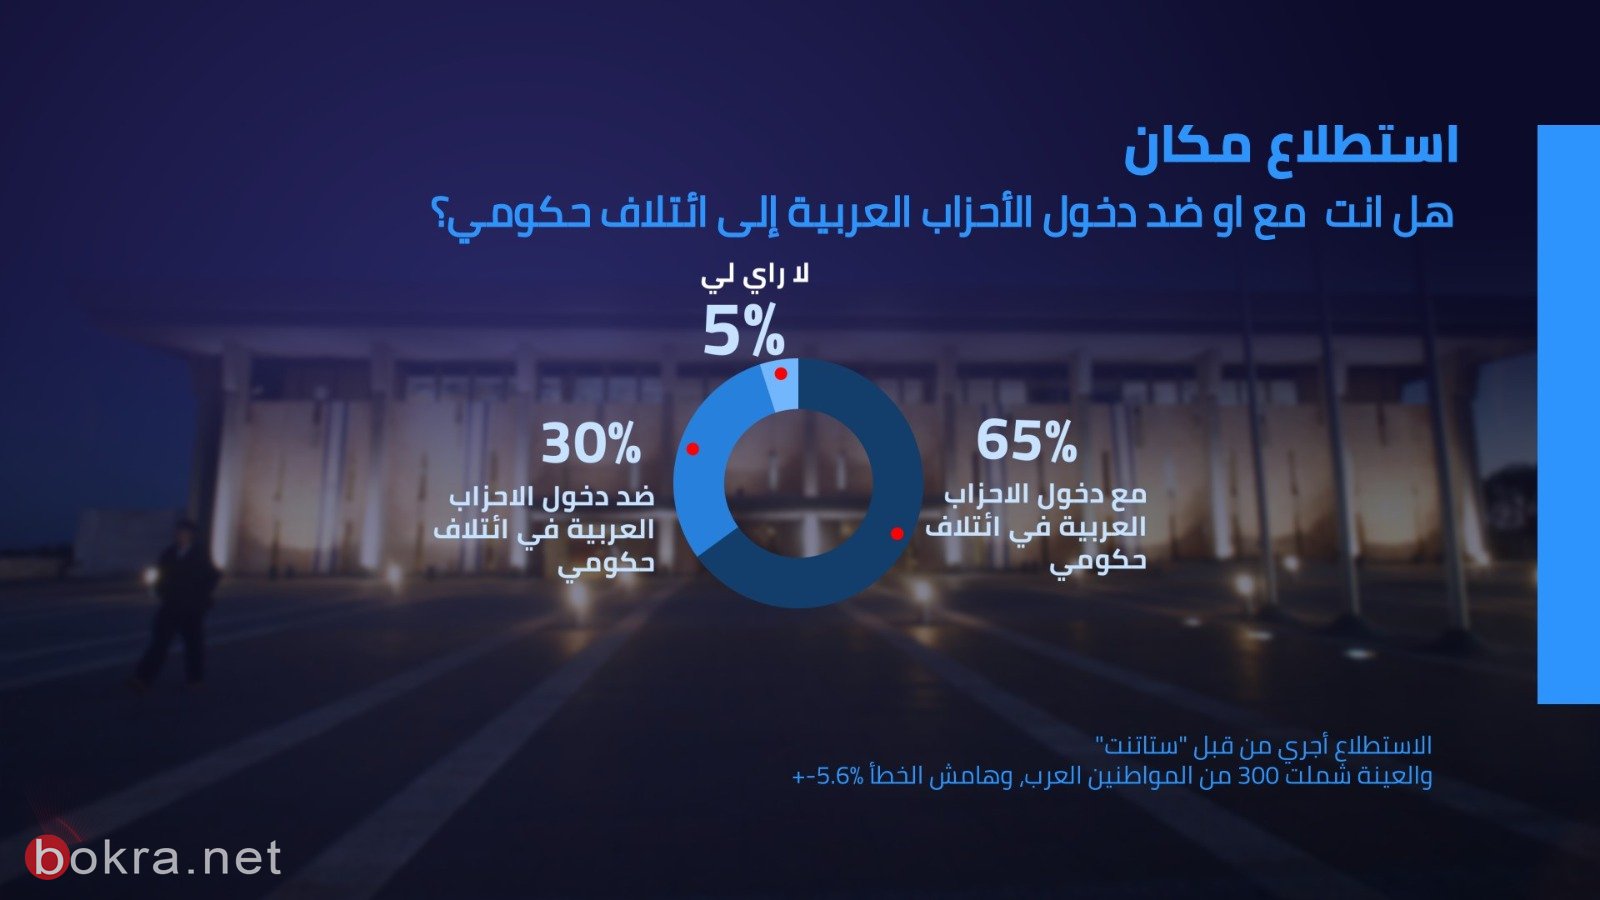 65% من العرب يؤيدون دخول الاحزاب العربية الى الائتلاف الحكومي-3